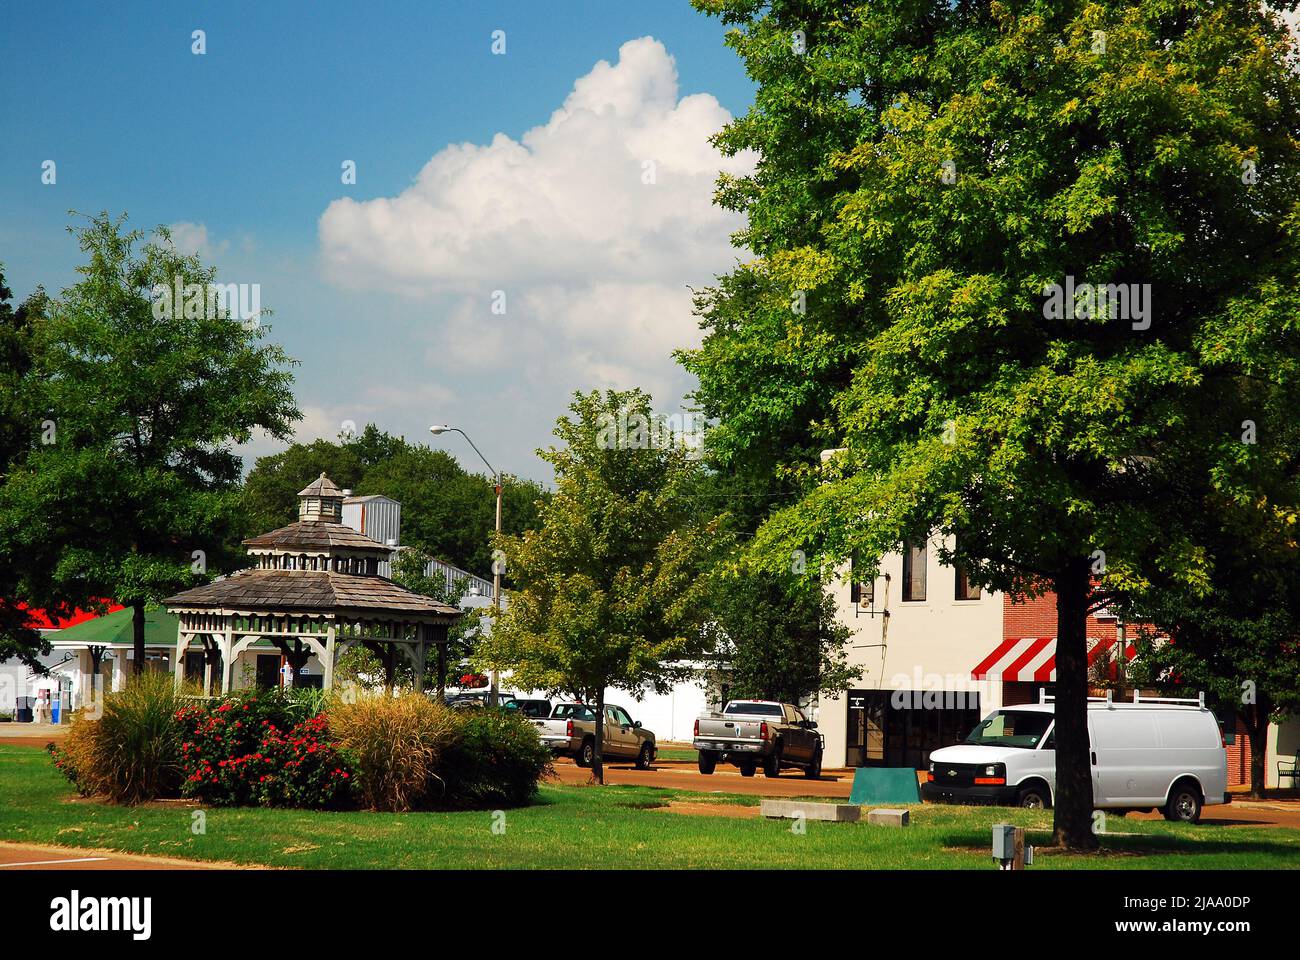 La piazza della cittadina di Tunica, Mississippi, offre un luogo rilassante nel centro cittadino Foto Stock